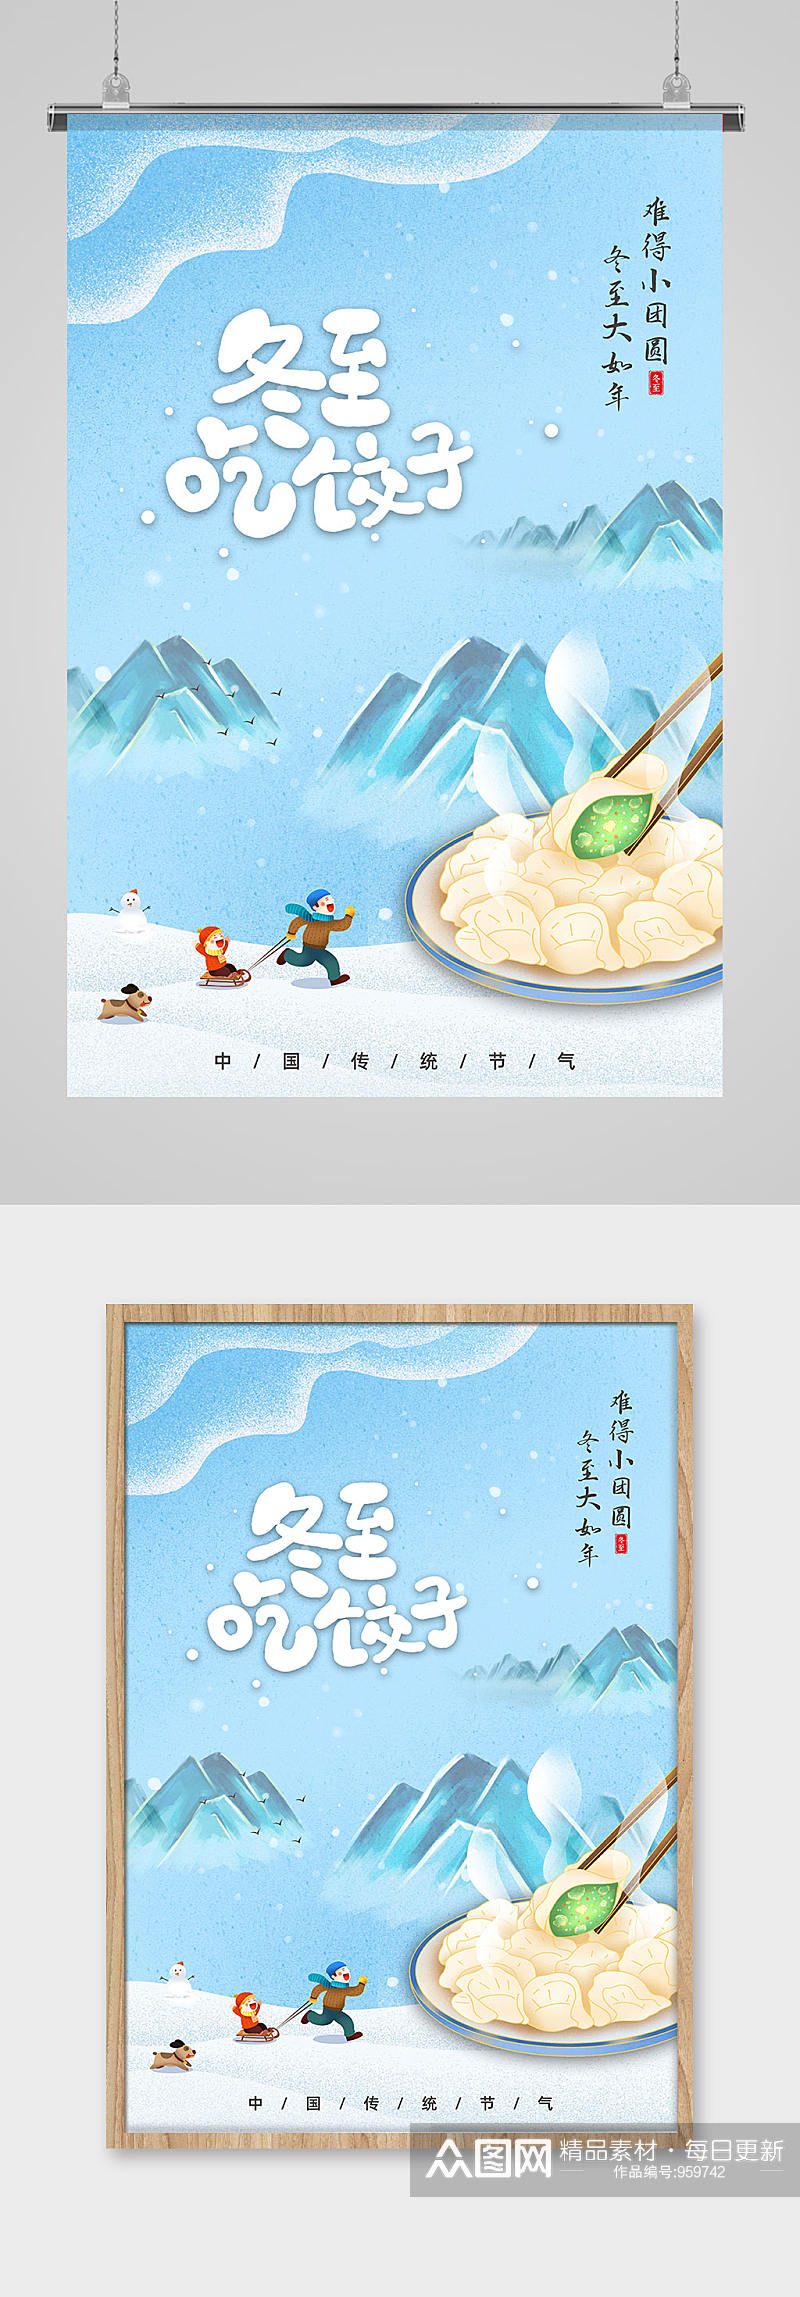 创意冬至吃水饺二十四节气海报素材